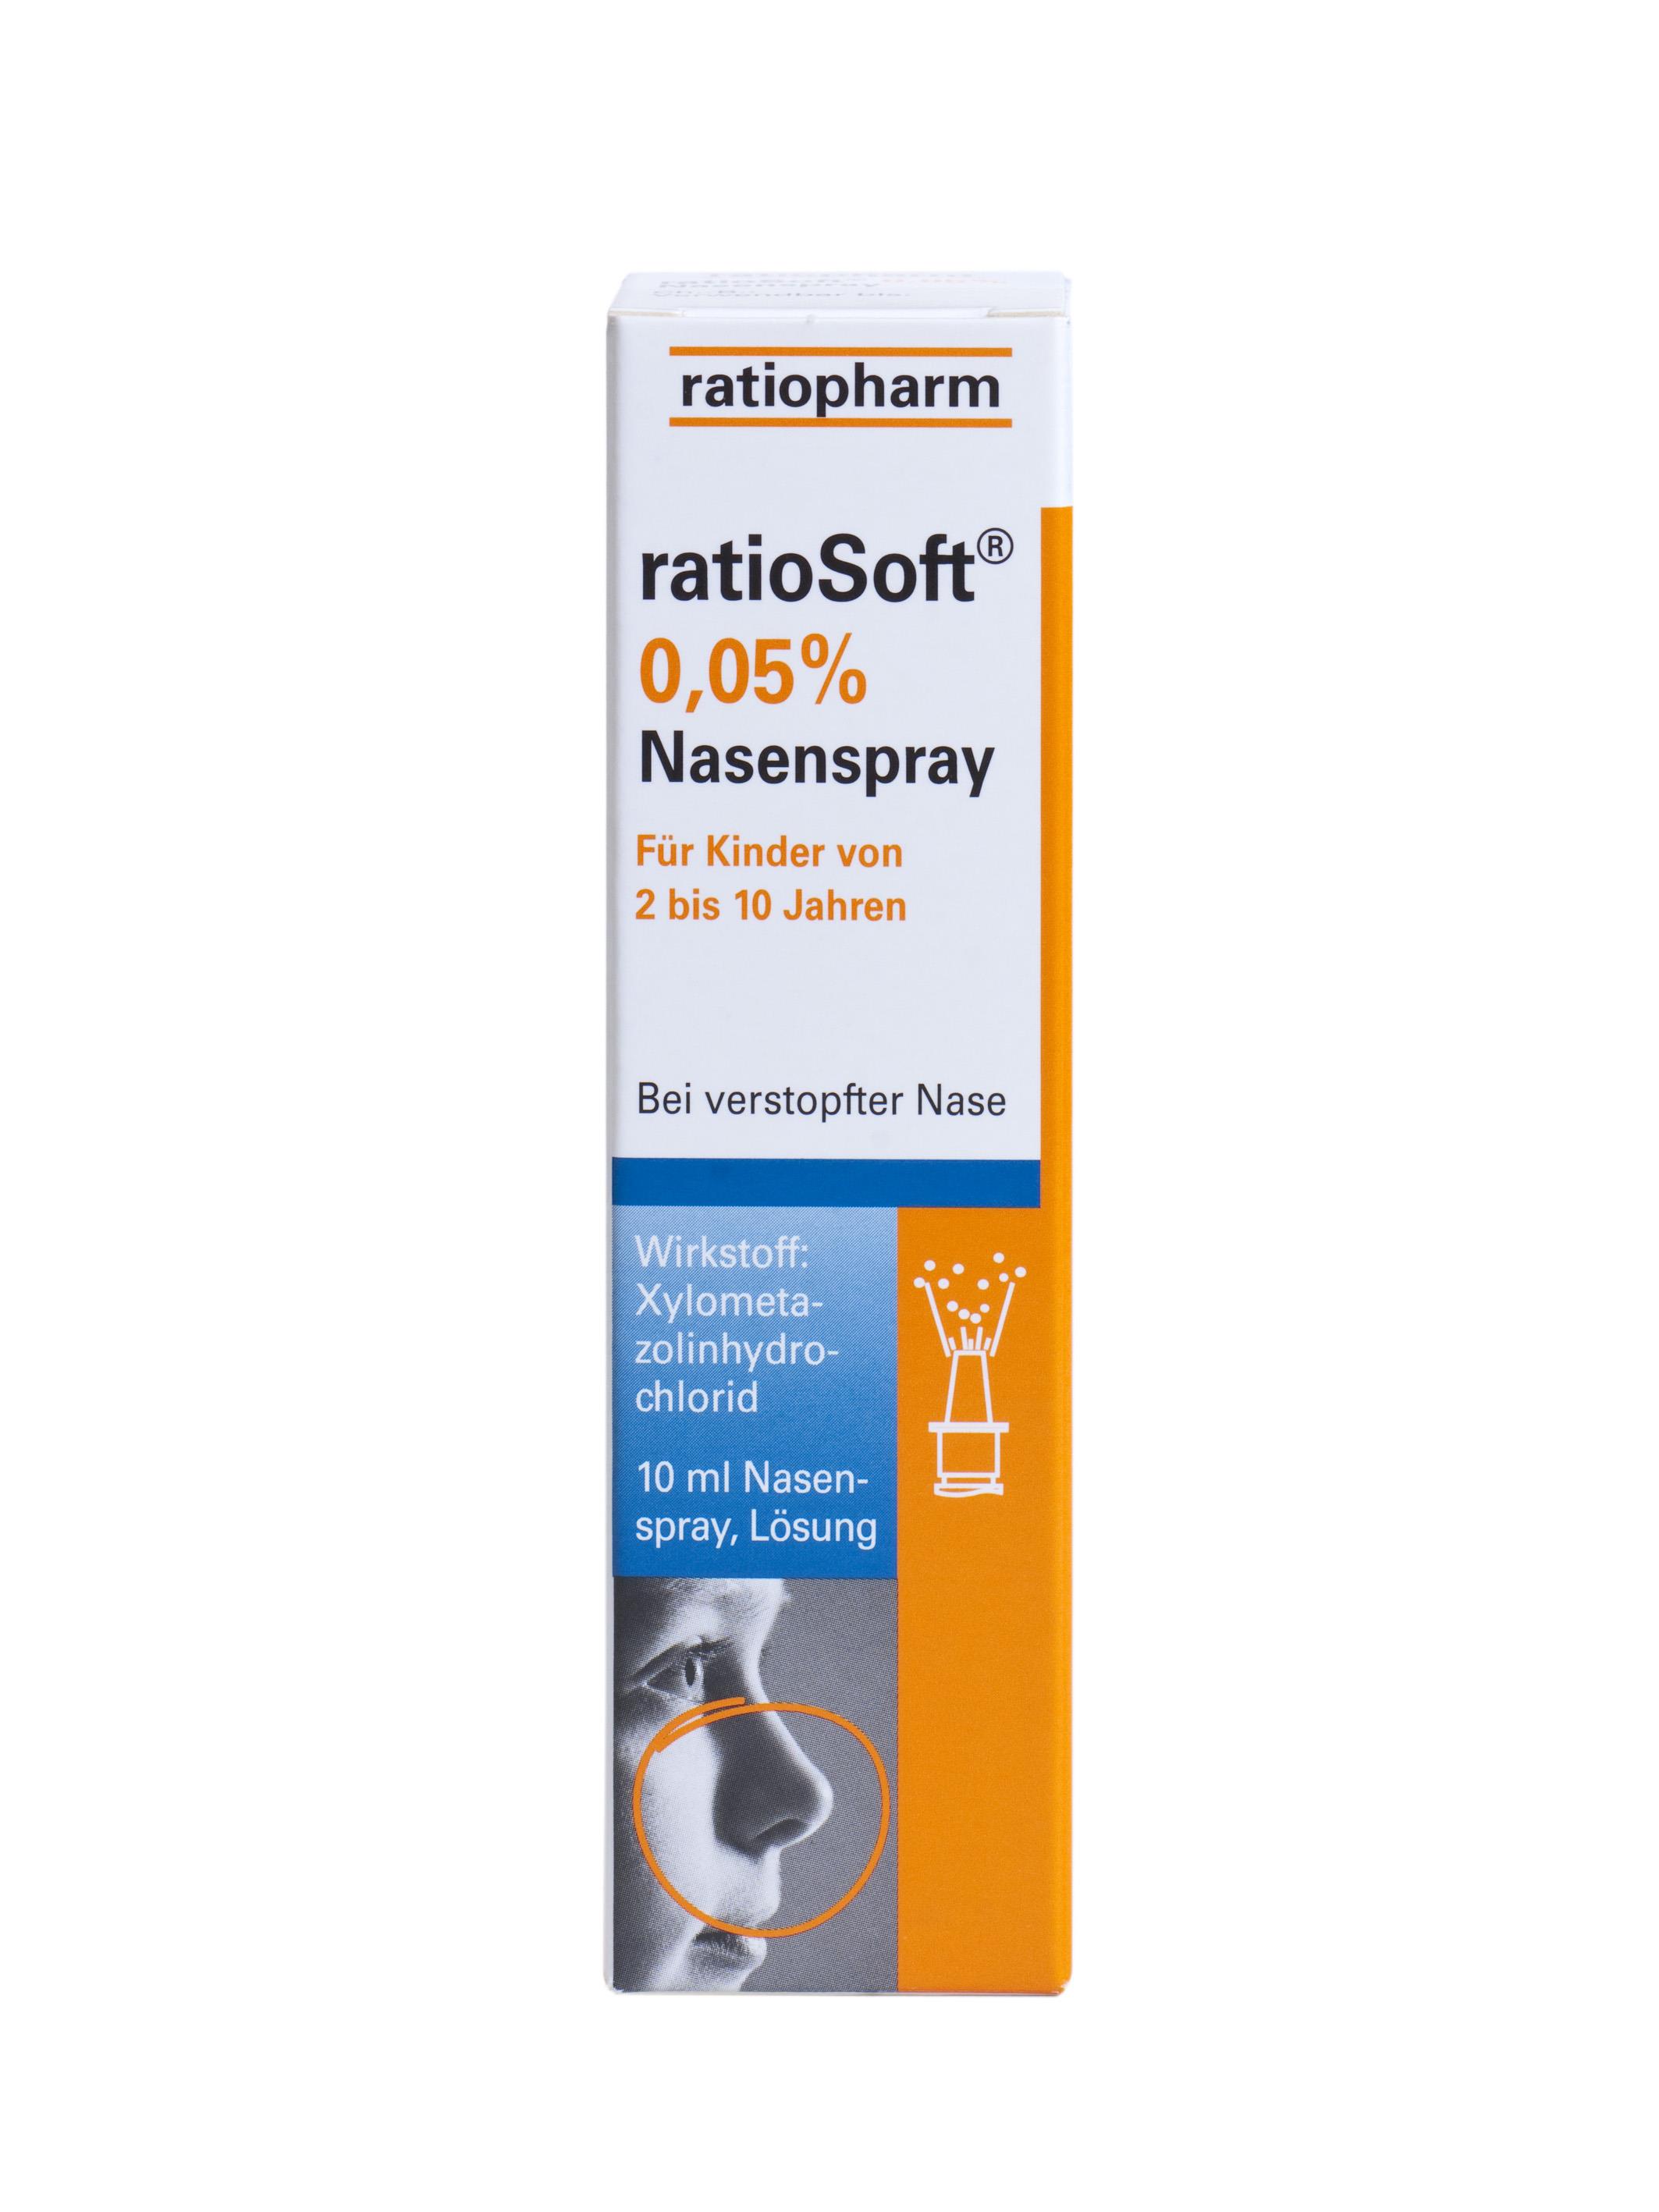 ratioSoft 0,05% - Nasenspray